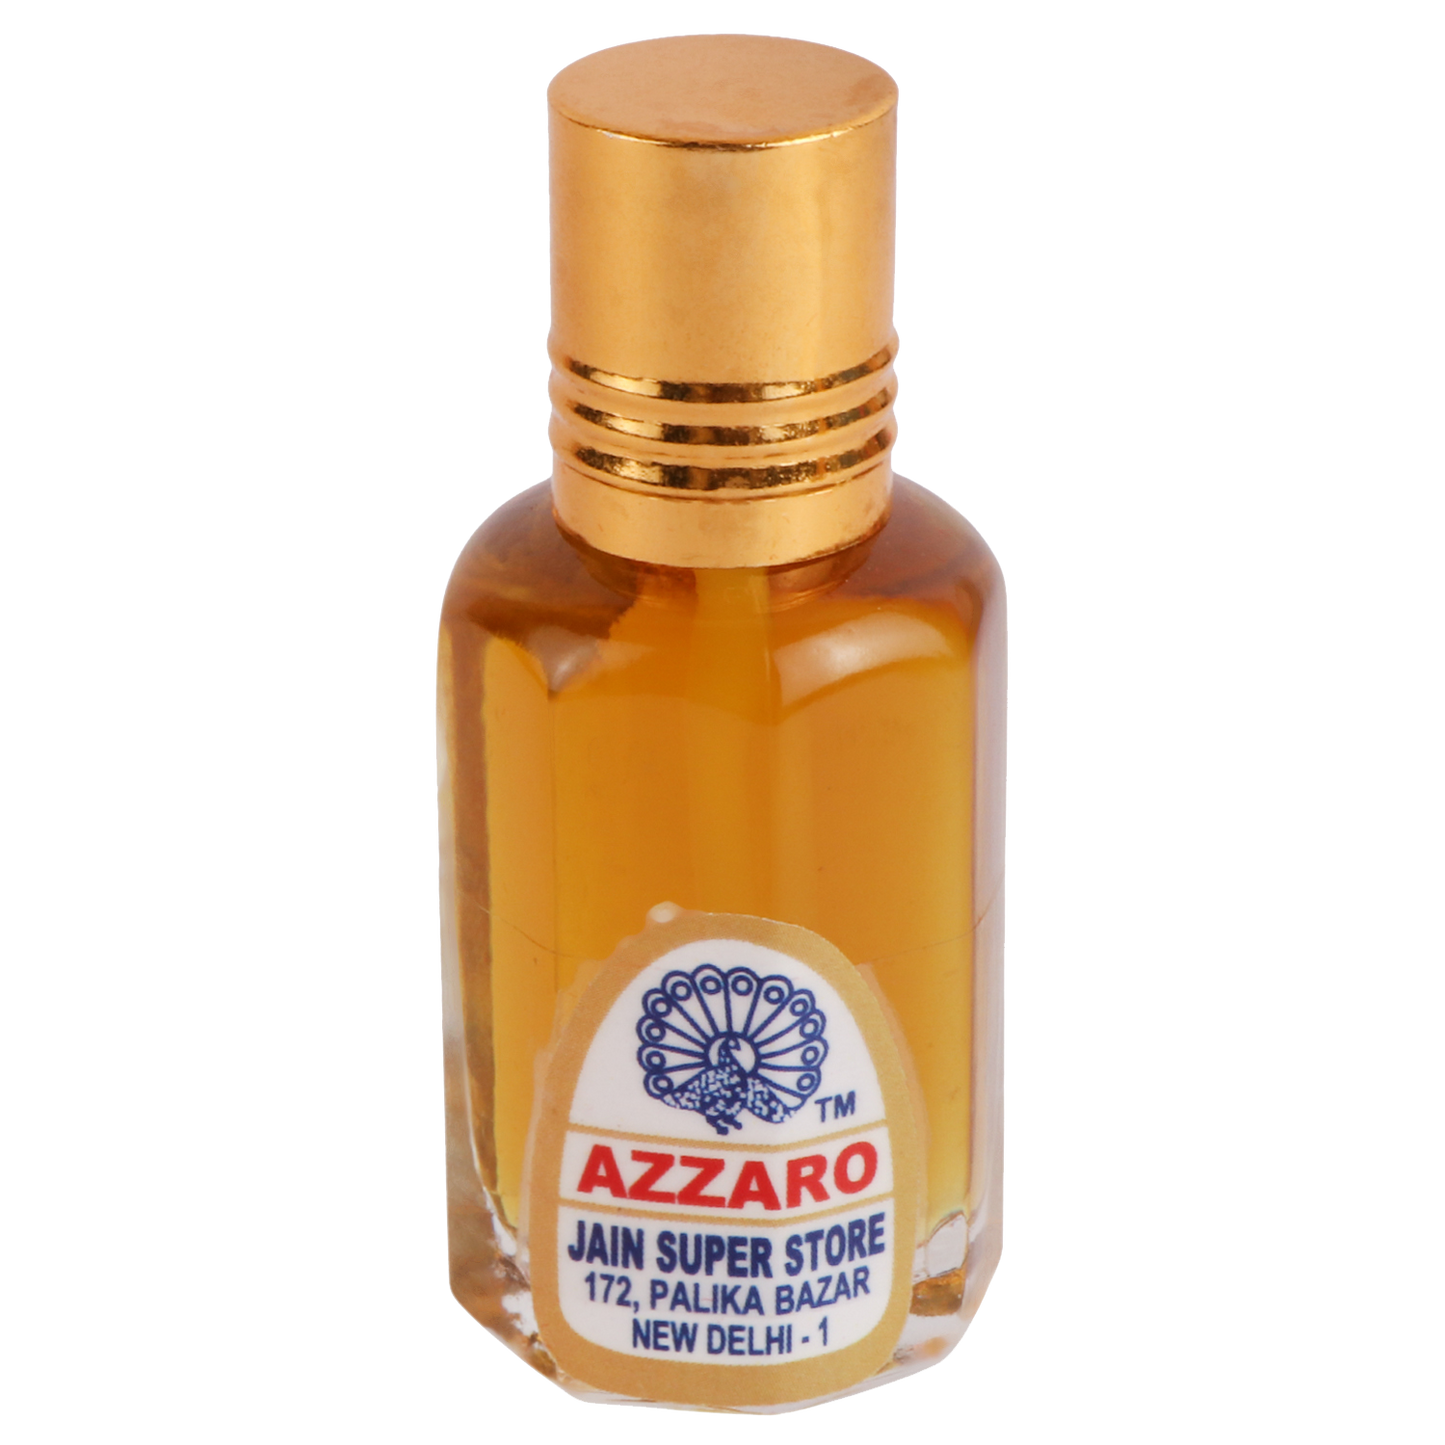 Azzaro Attar Perfume